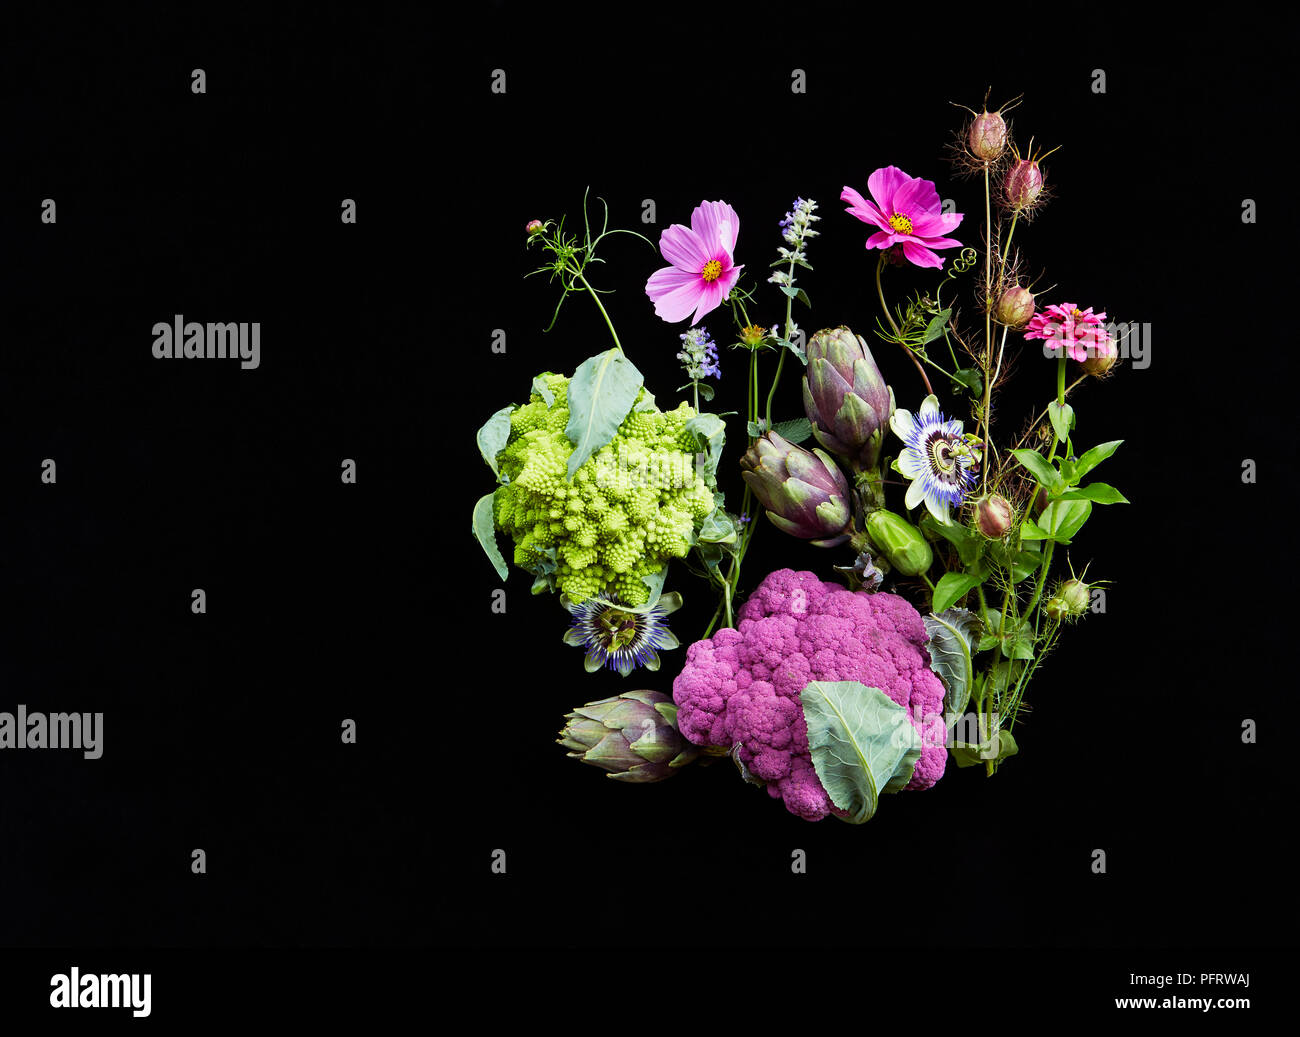 Sélection de fleurs et plantes cultivées, y compris biodynamique choux-fleurs et artichauts Banque D'Images